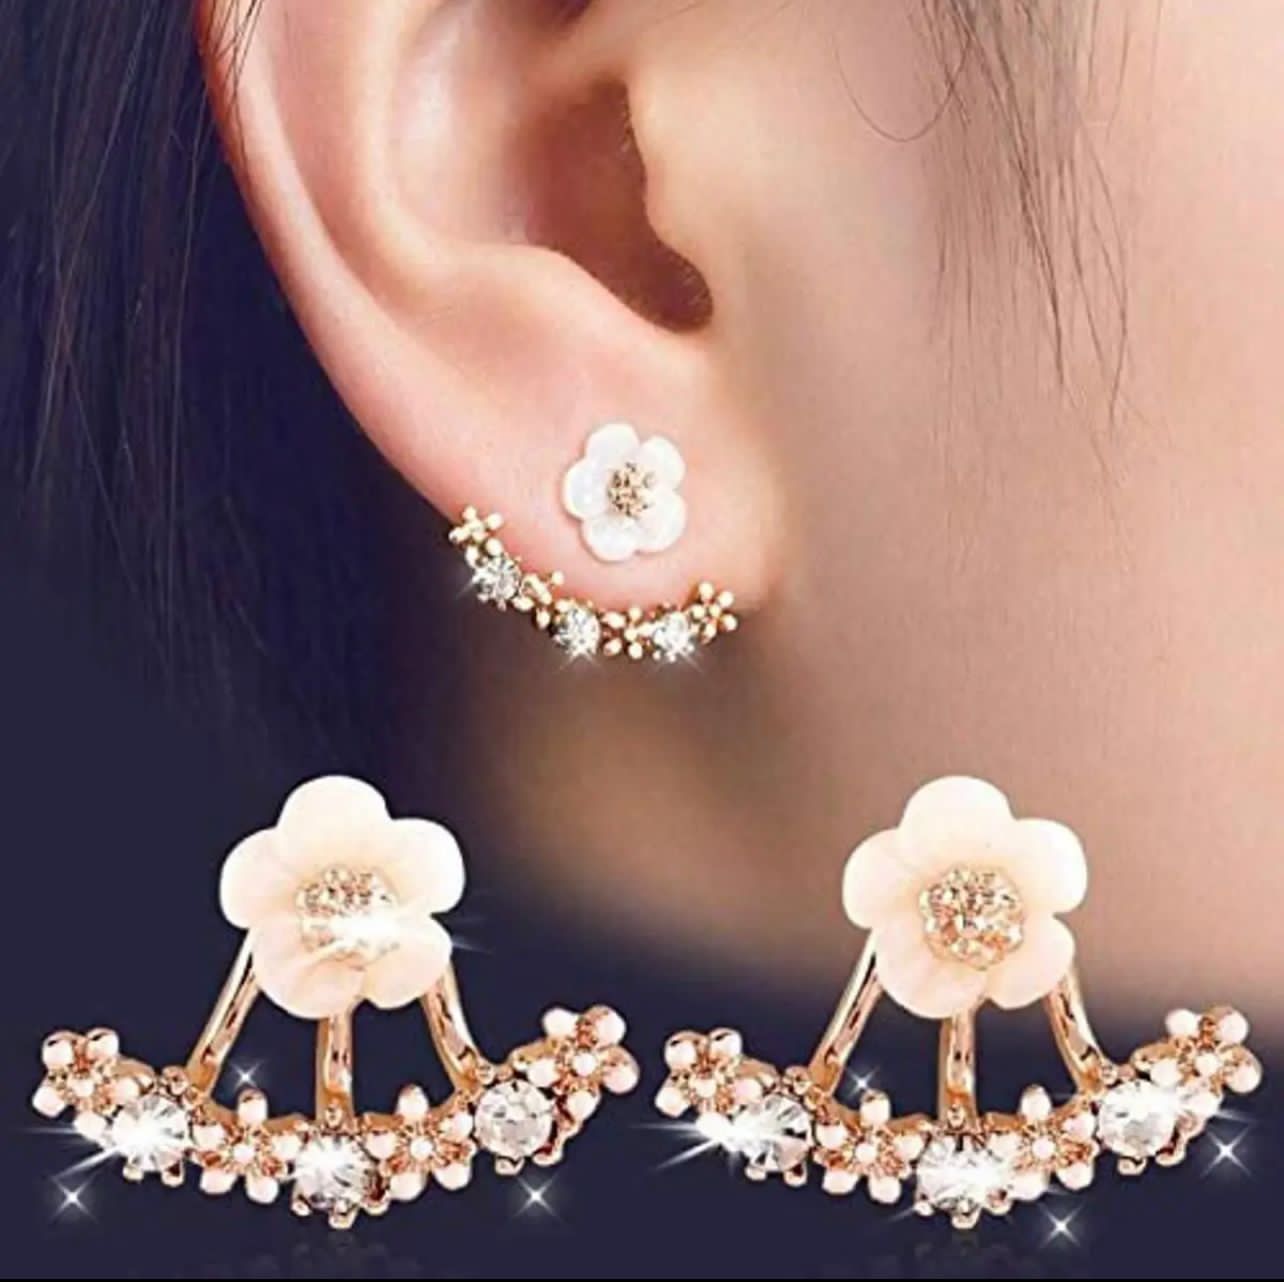 Daisy Flower Earrings, Delicate Flower Stud Earrings For Women, Zircon Flower Earrings,  Beautiful Crystal Flower Earring Jewelry For Women, Wedding Engagement Zircon Pendant Earrings Jewelry